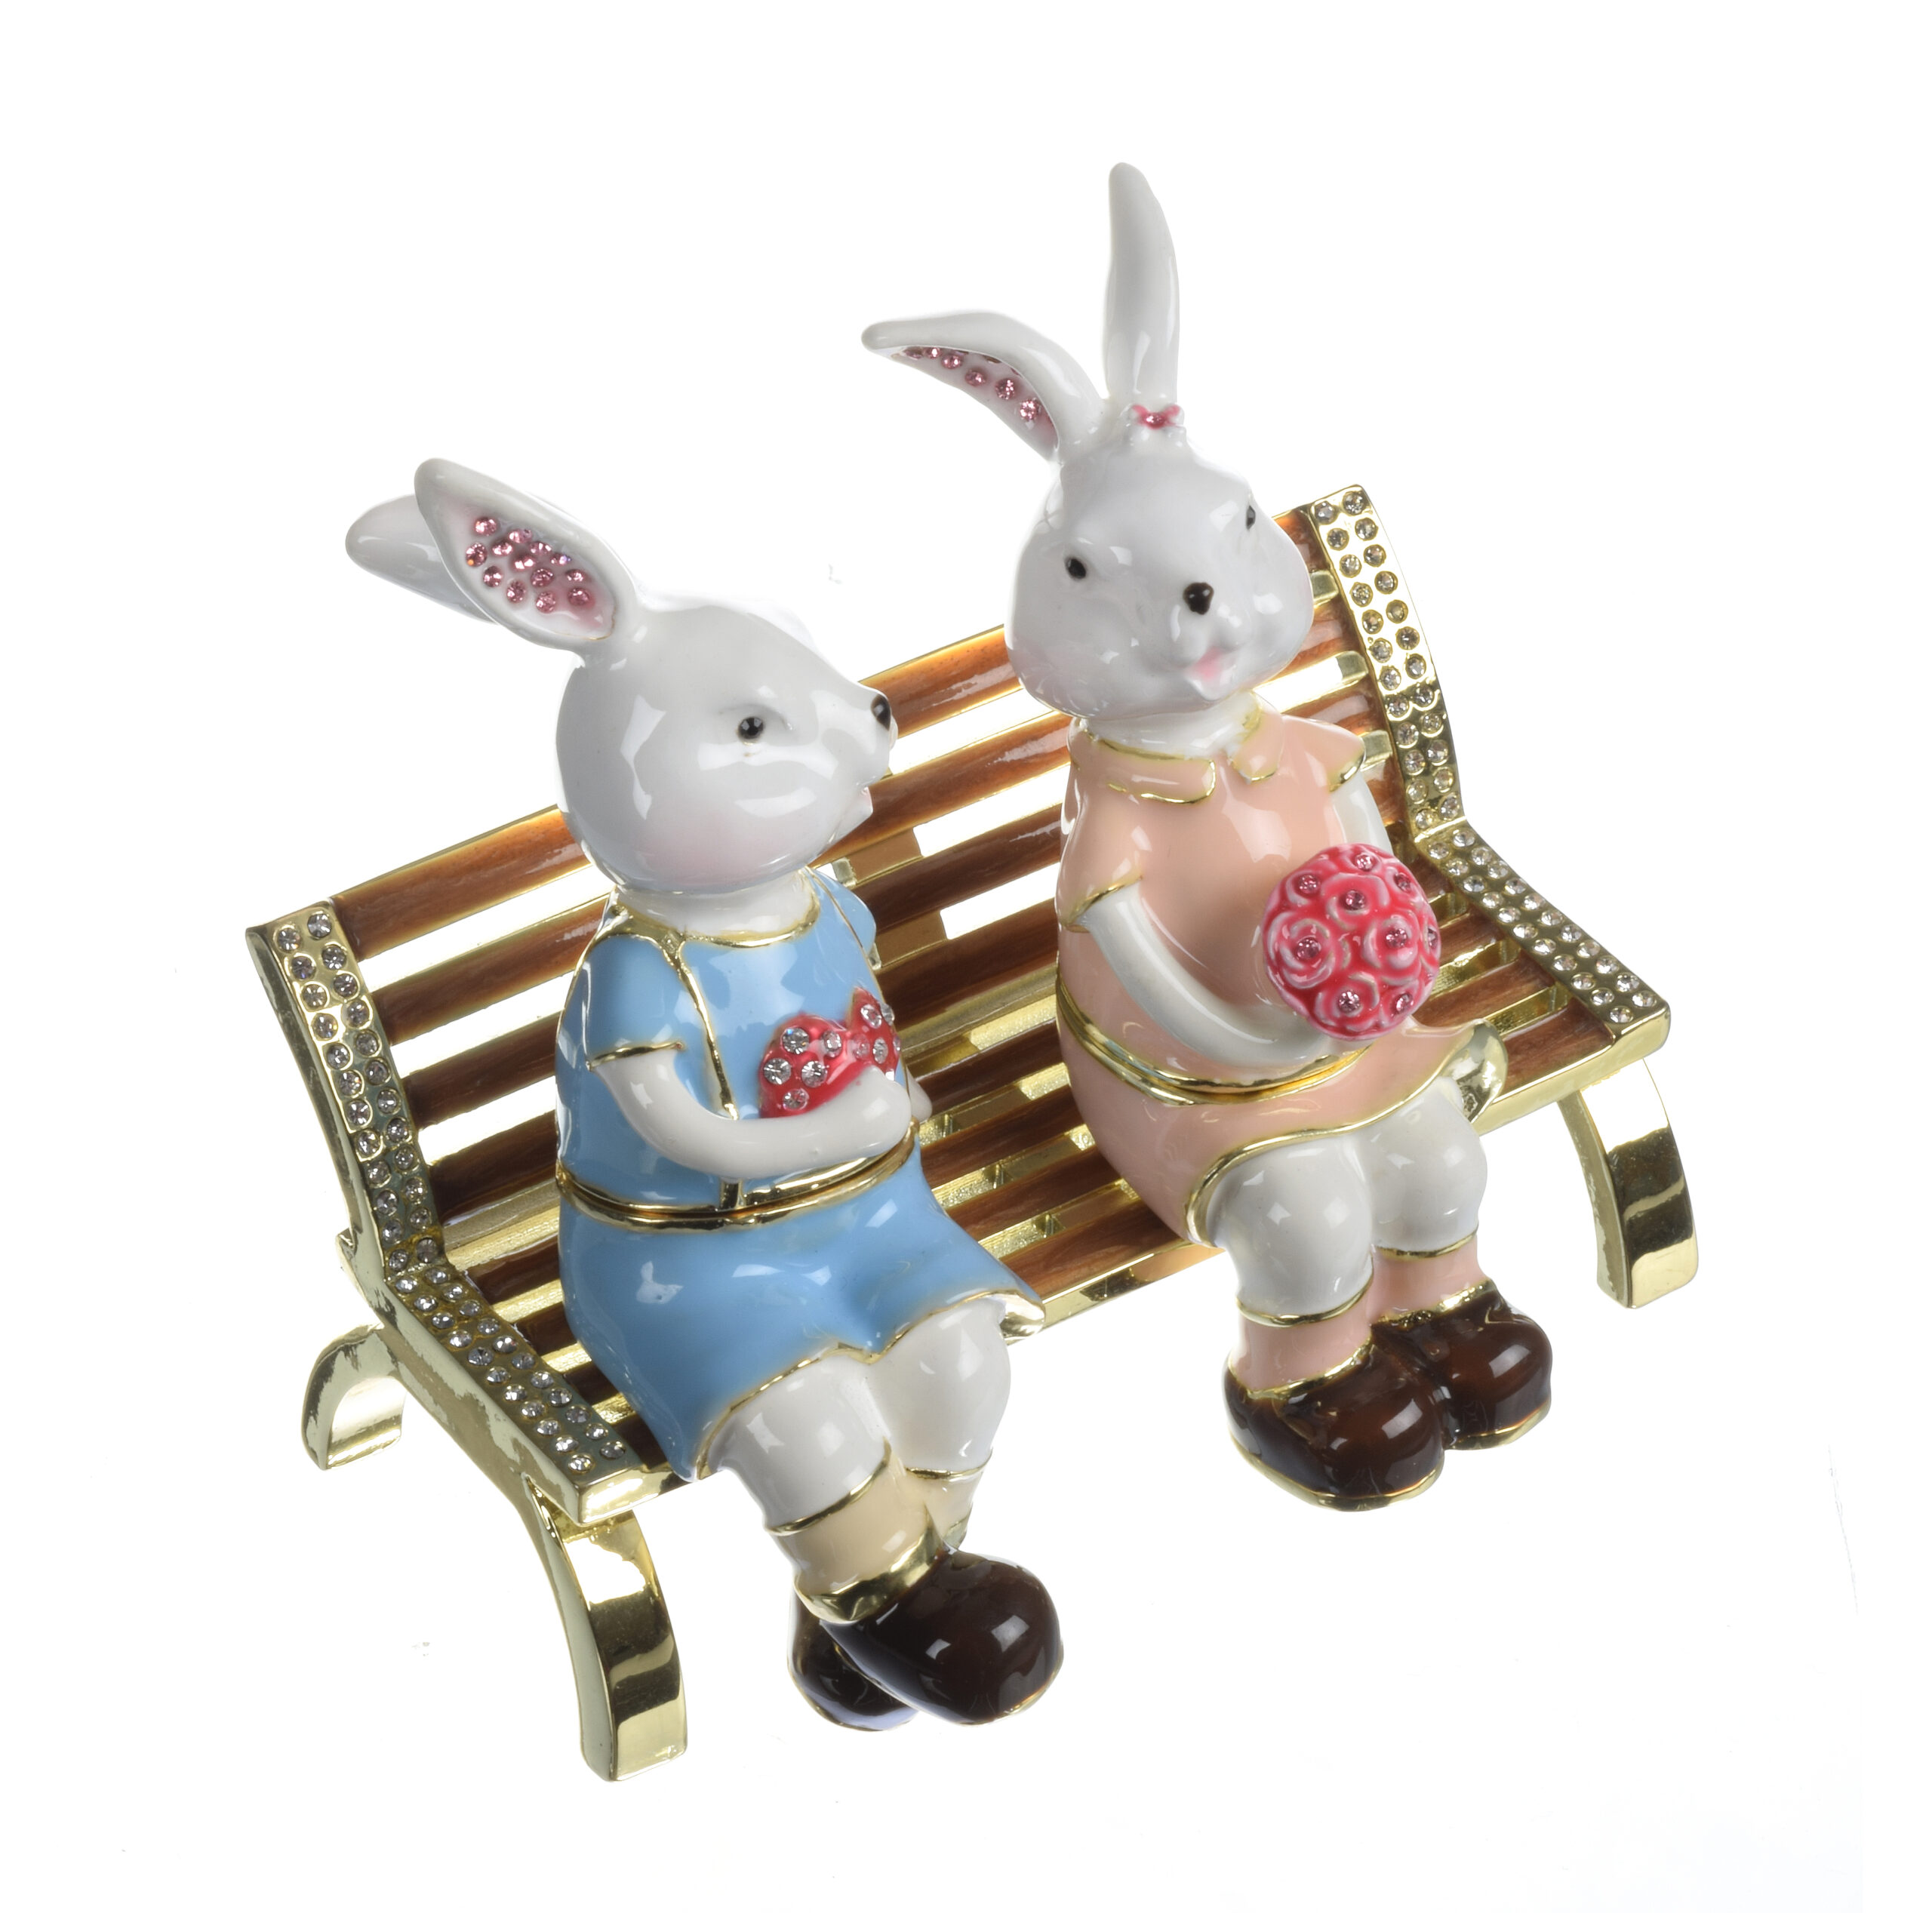 ארנבים על ספסל